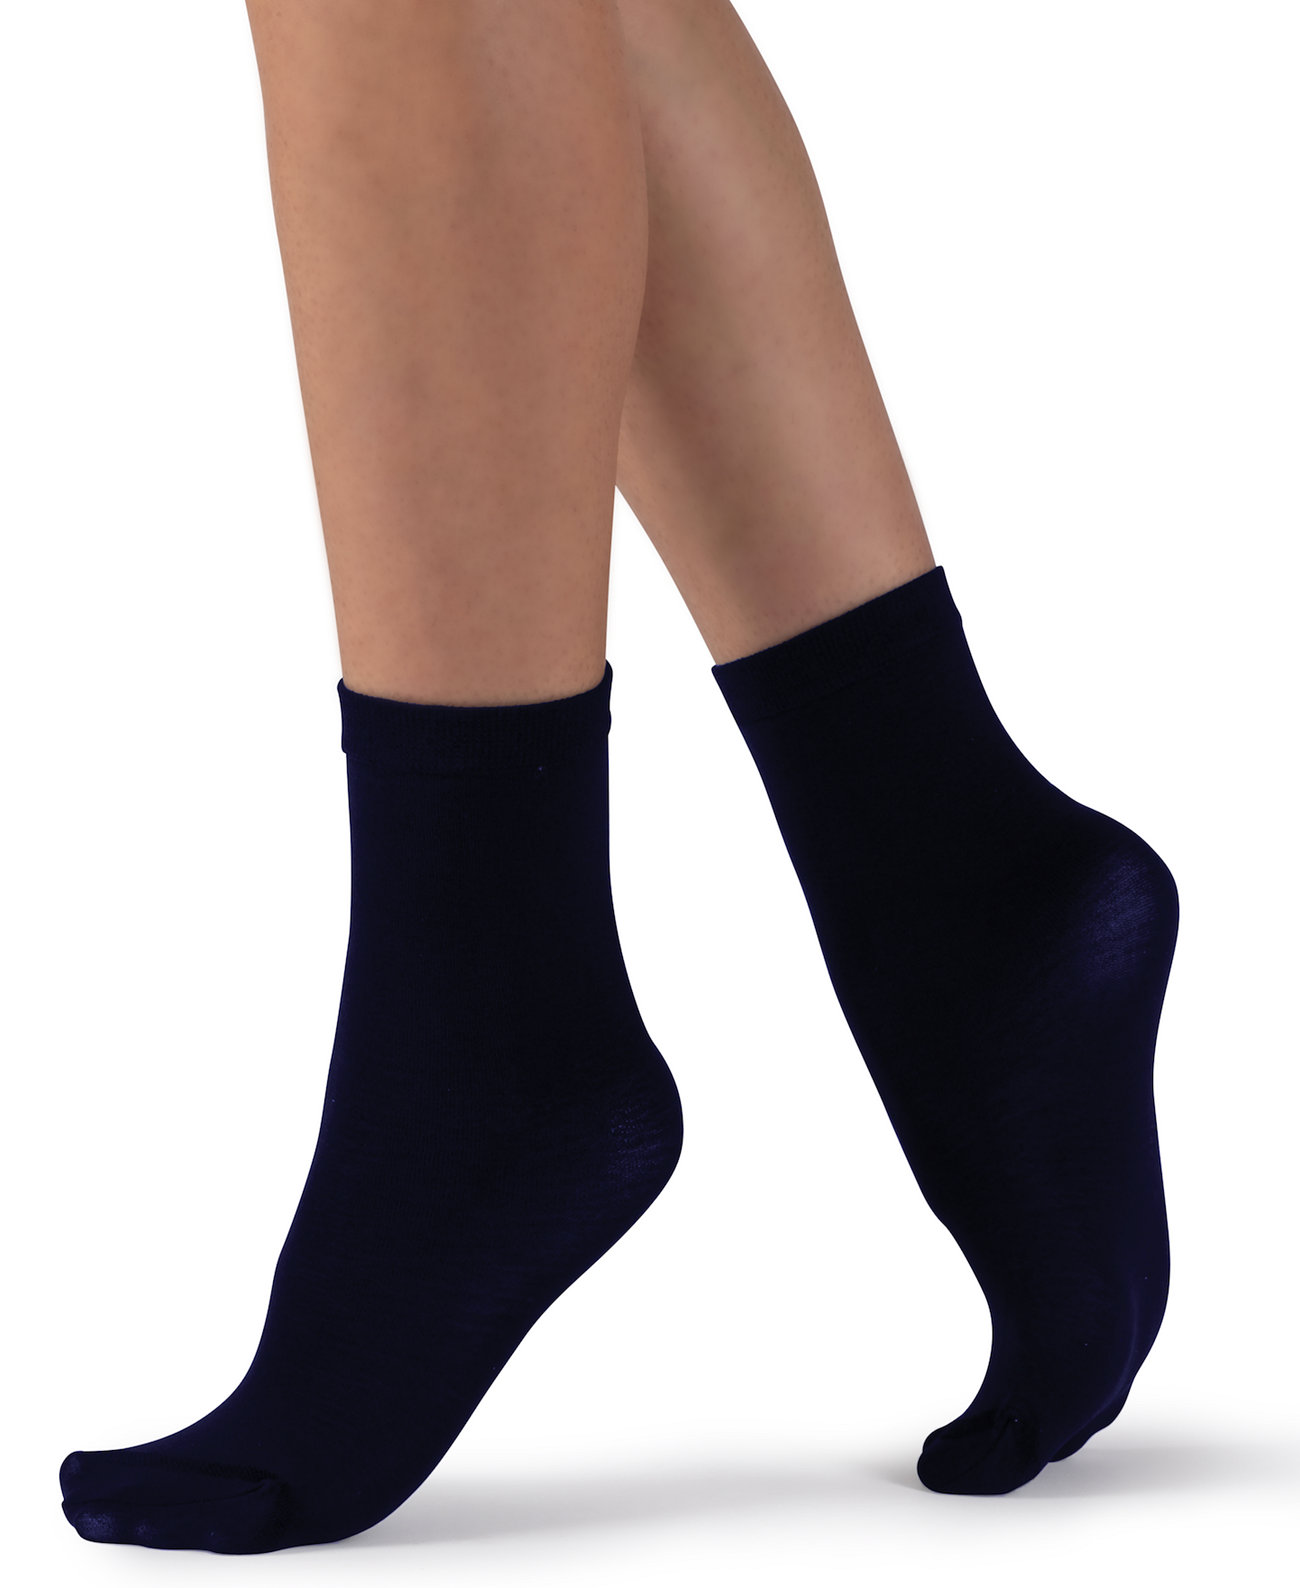 Женские классические носки из хлопковой смеси европейского производства Lechery